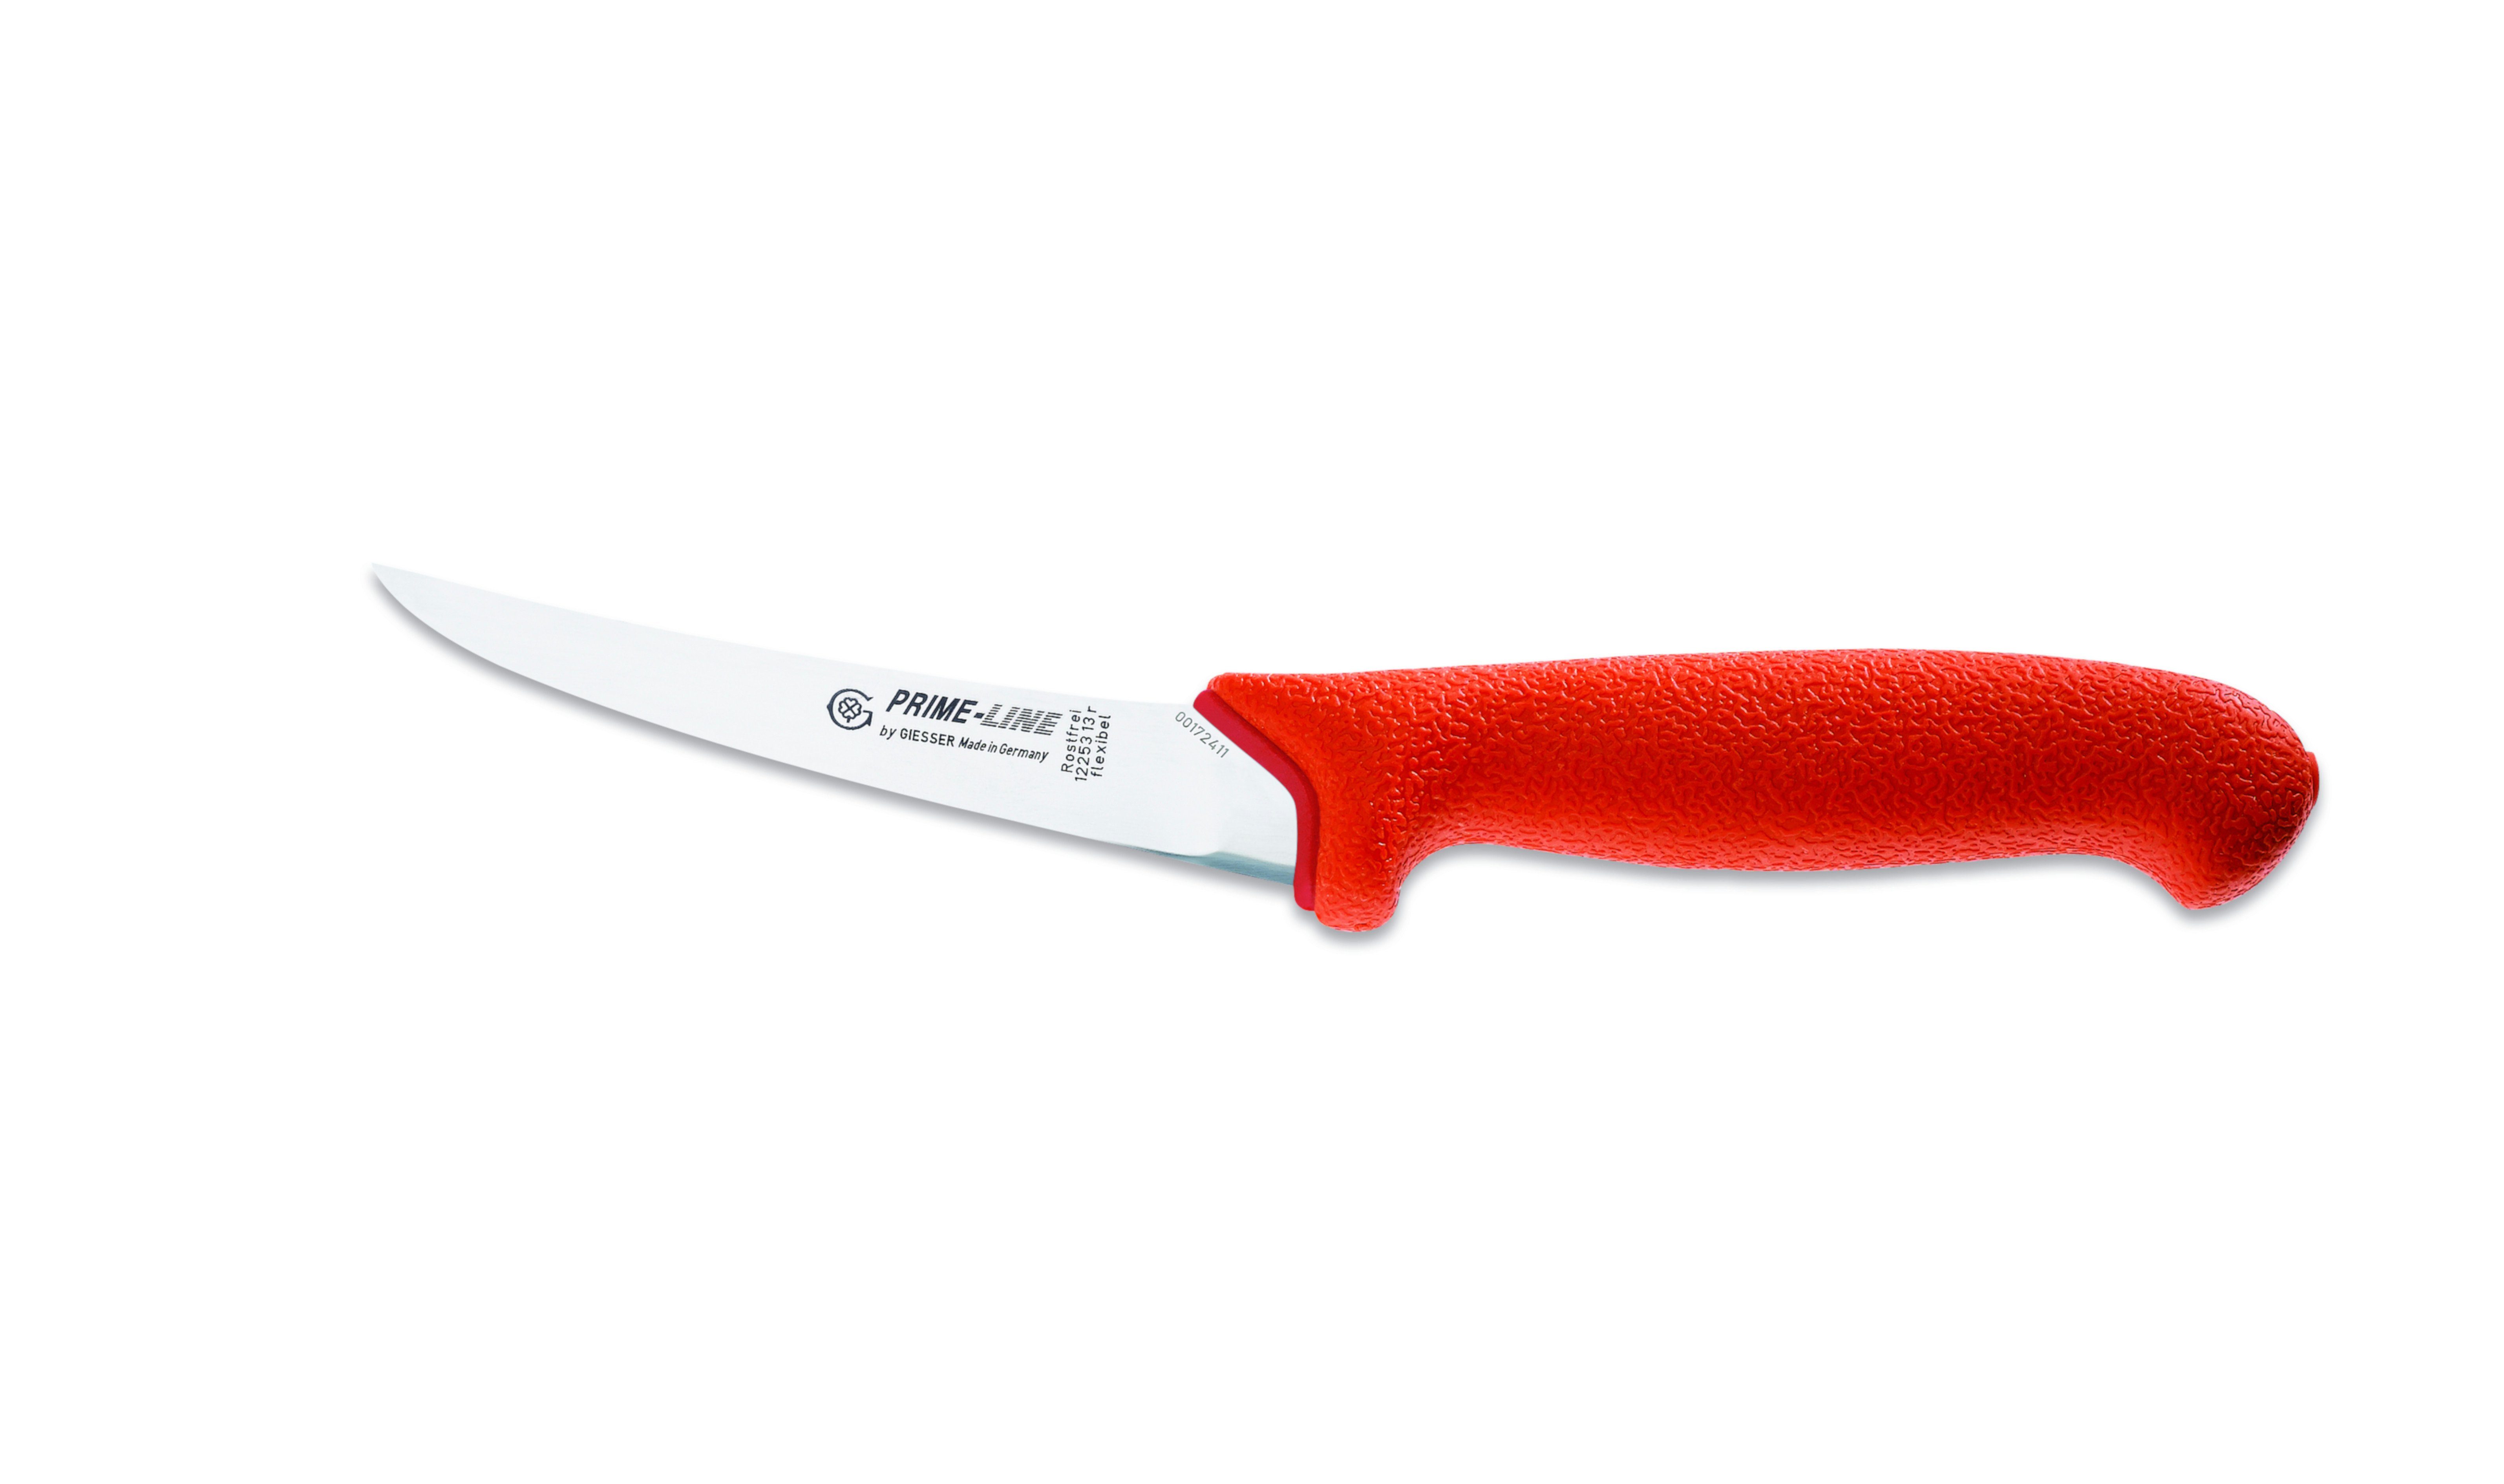 Giesser Messer Ausbeinmesser Fleischermesser 12250 13/15, PrimeLine, scharf, rutschfest, weicher Griff rot